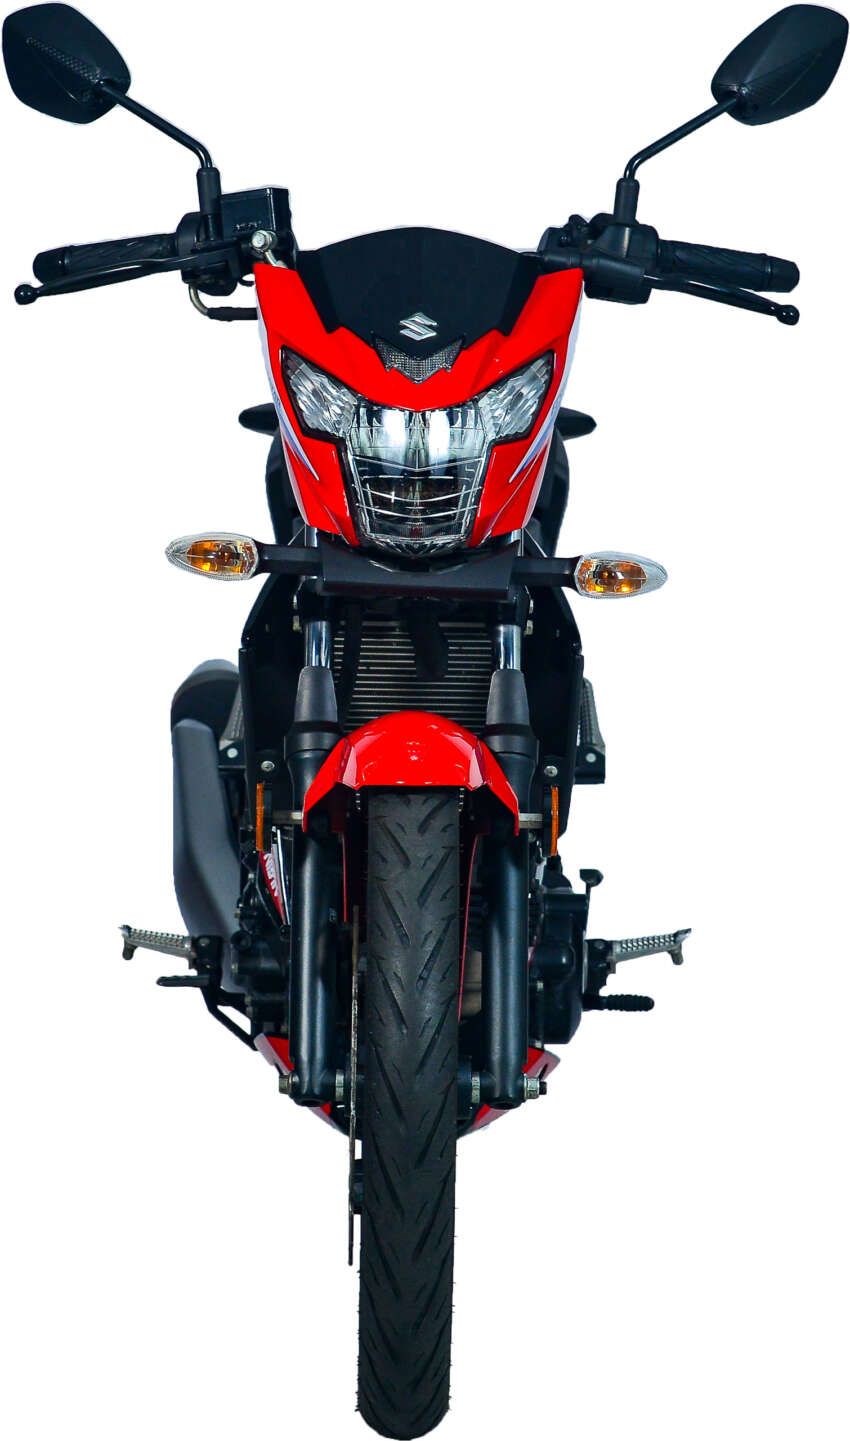 Suzuki Raider R150Fi EWC1 dilancar untuk pasaran Malaysia – grafik inspirasi motosikal lumba, RM9k 1748596